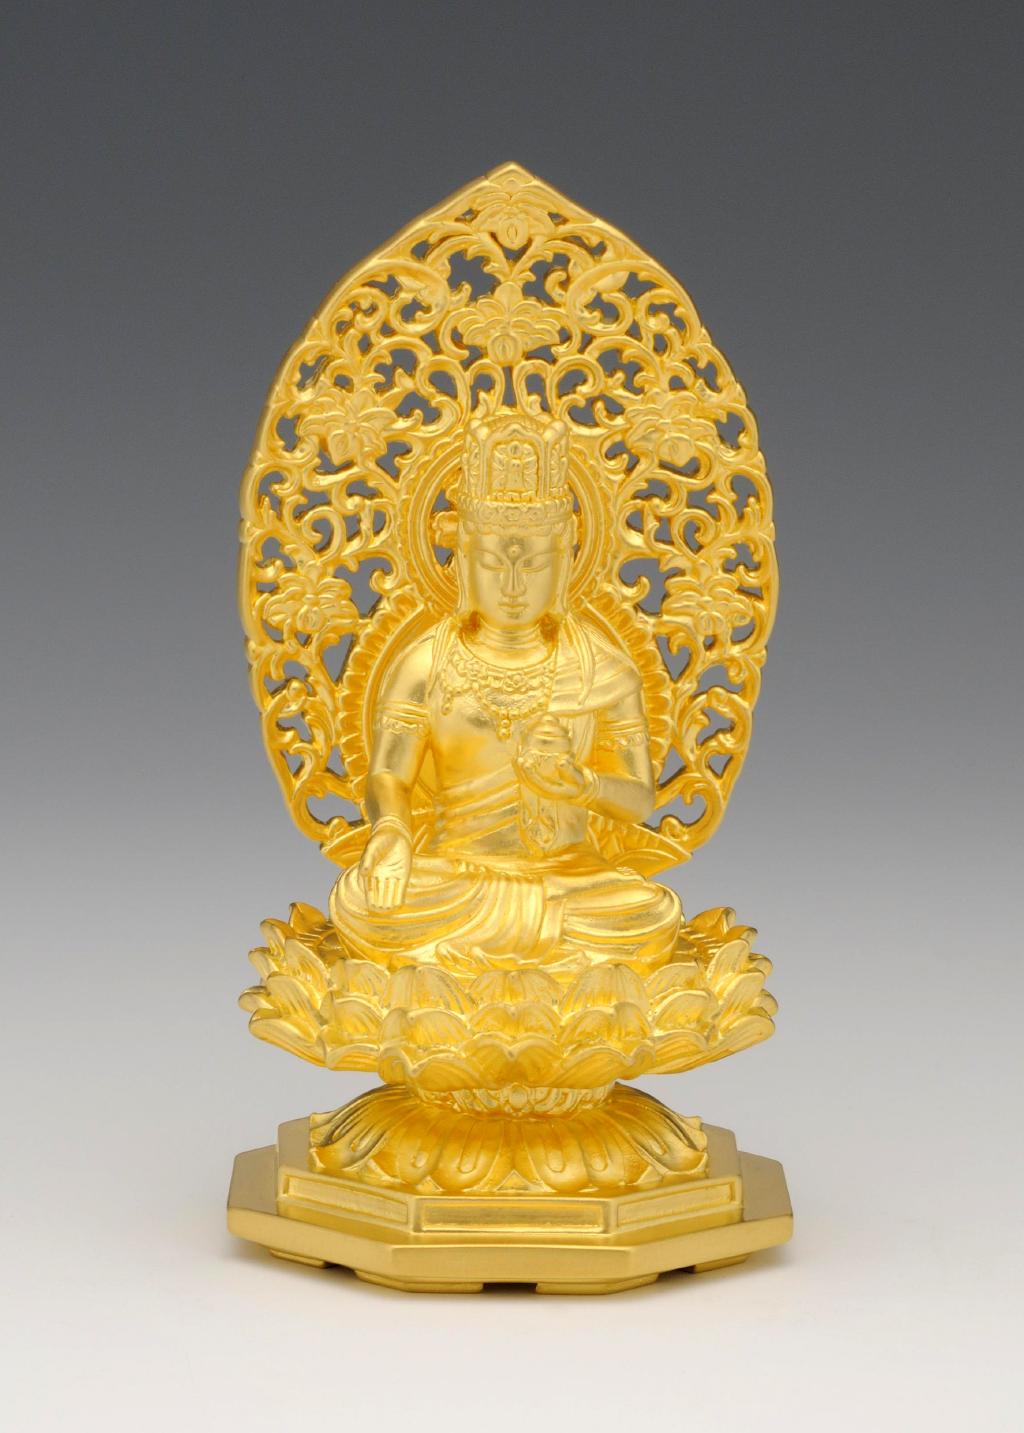 仏像 虚空蔵菩薩 純金製 総高10cm 日本の手技 純金製御仏像 本格仏像の仏像ワールド